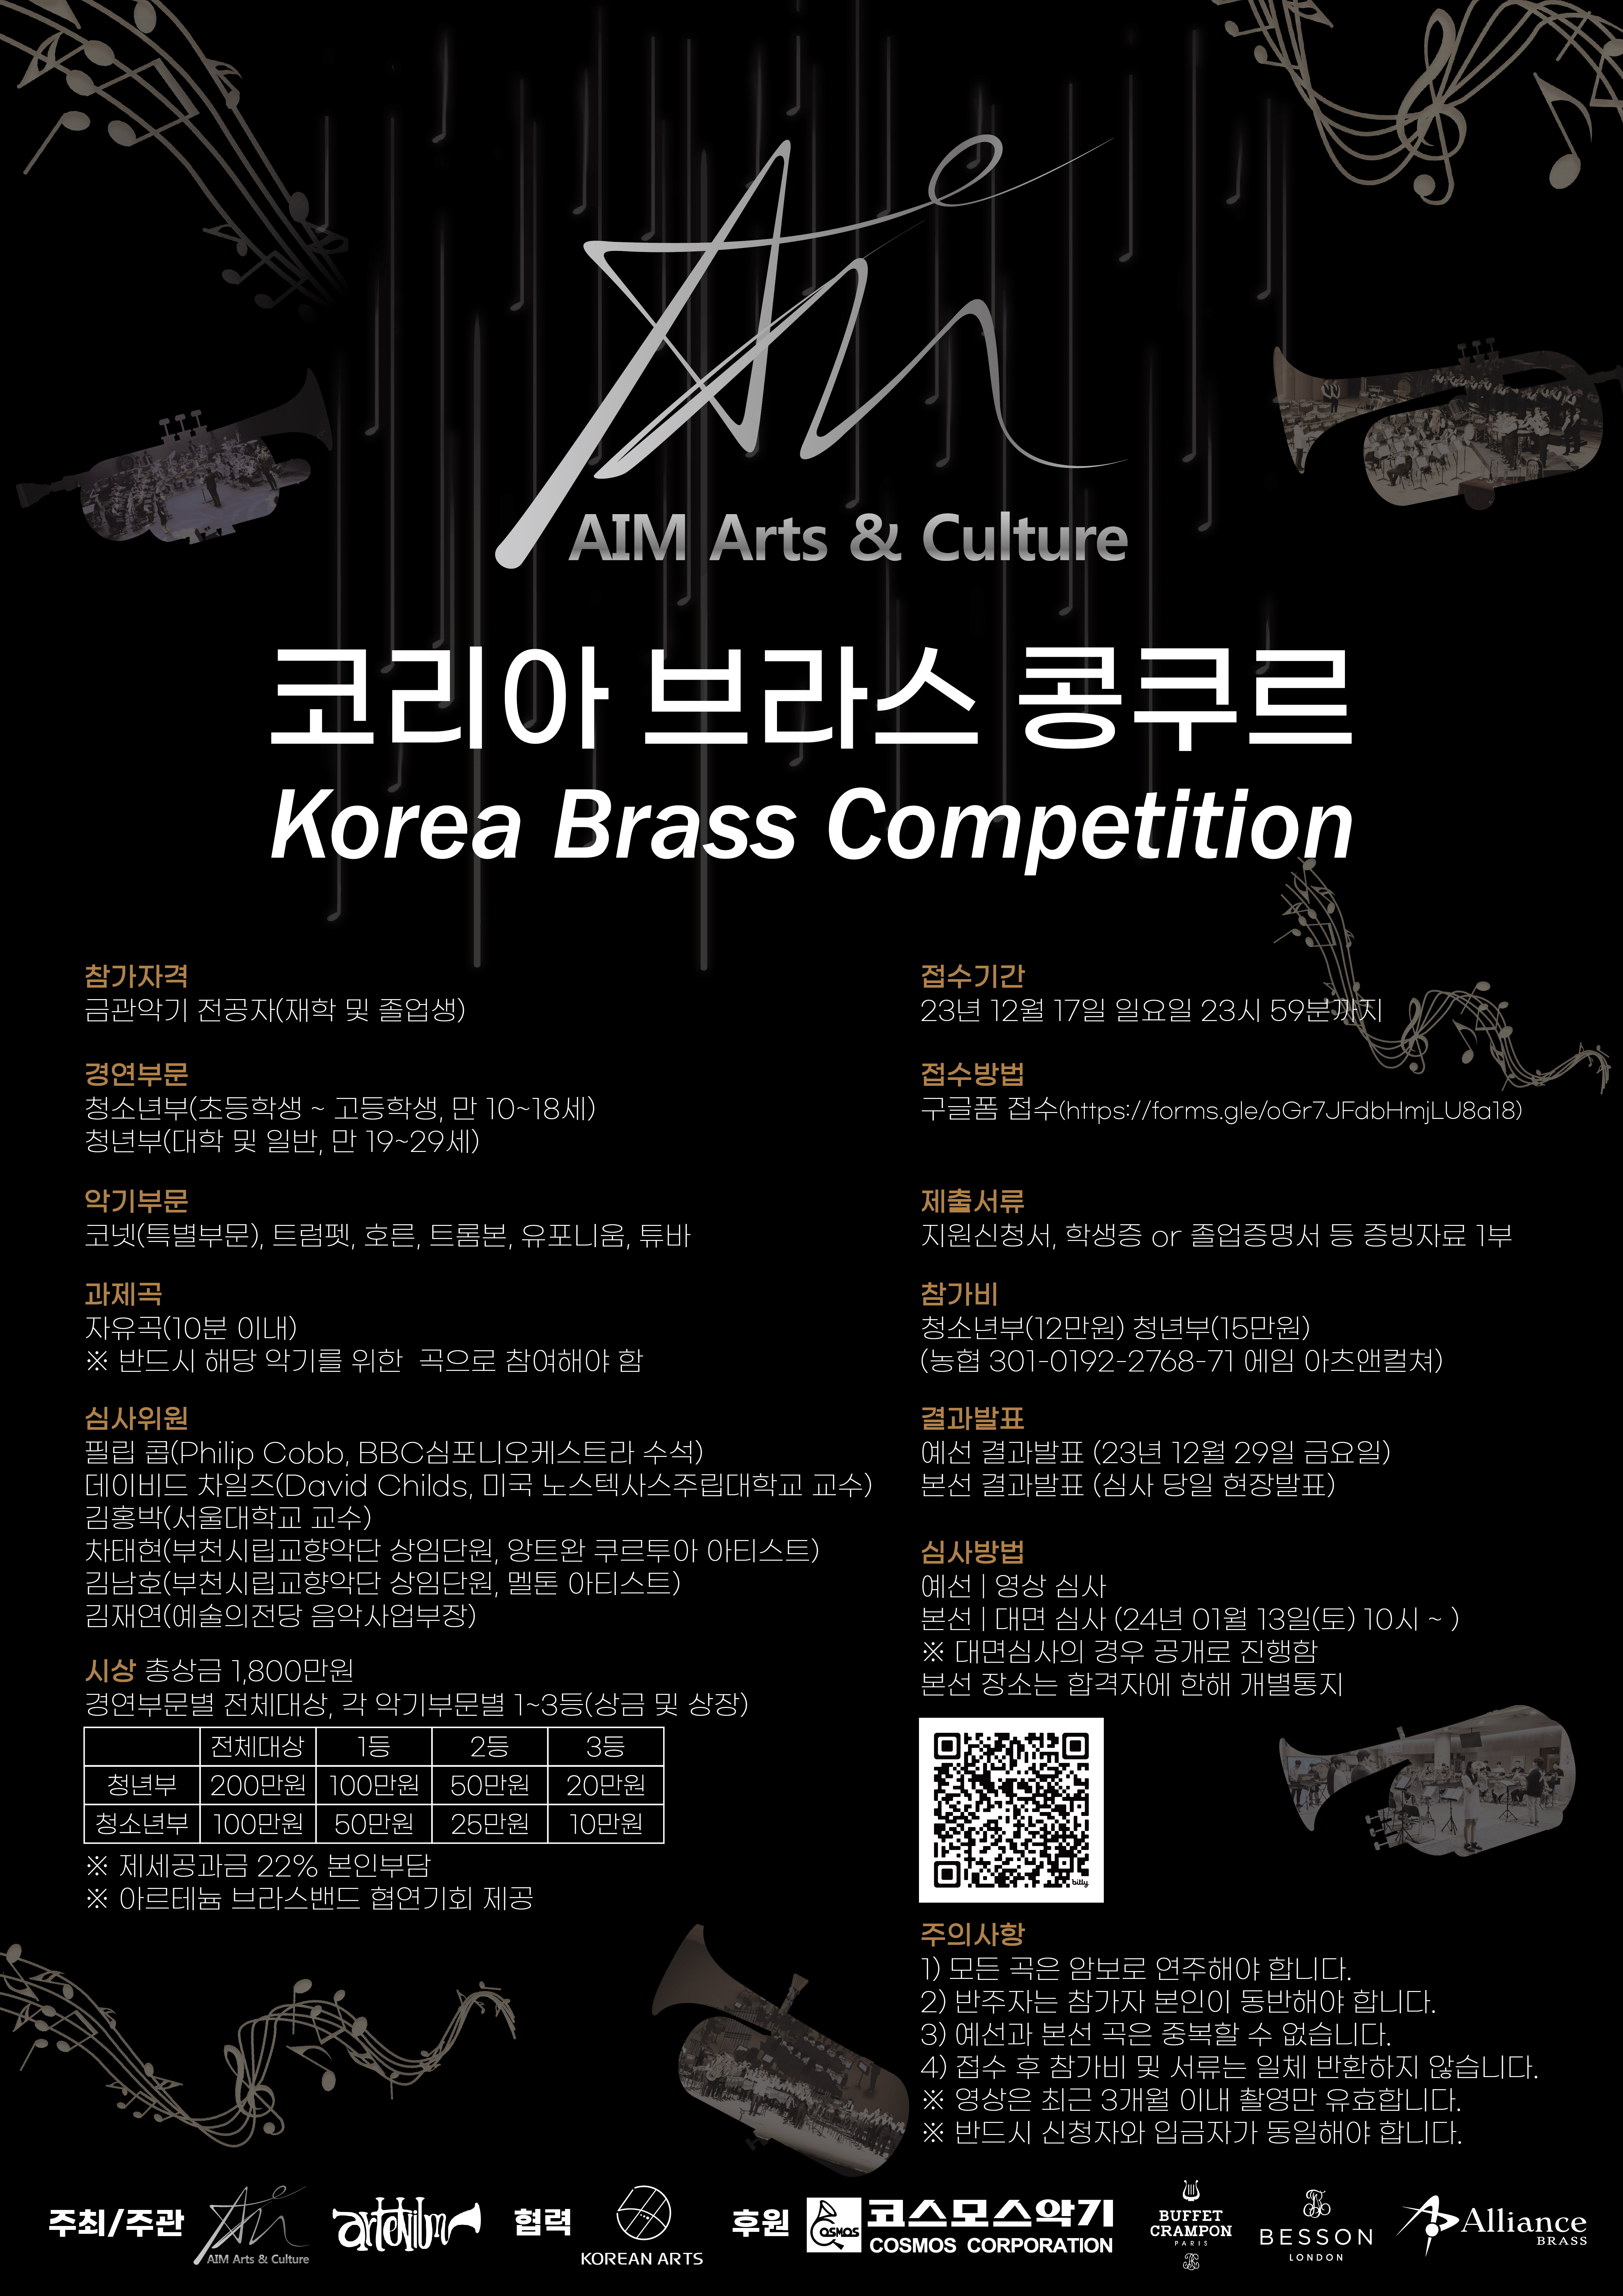 AIM Arts & Culture 코리아 브라스 콩쿠르 Korea Brass Competition ㅇ참가자격 : 금관악기 전공자(재학 및 졸업생) ㅇ경연부문 : 청소년부(초등학생 ~ 고등학생, 만 10~18세) 청년부(대학 및 일반, 만 19~29세) ㅇ악기부문 : 코넷(특별부문), 트럼펫, 호른, 트롬본, 유포니움, 튜바 ㅇ과제곡 : 자유곡(10분 이내) ※ 반드시 해당 악기를 위한 곡으로 참여해야 함 ㅇ심사위원 : 필립 콥(Philip Cobb, BBC심포니오케스트라 수석), 데이비드 차일즈(David Childs, 미국 노스텍사스주립대학교 교수) 김홍박(서울대학교 교수), 차태현(부천시립교향악단 상임단원, 앙트완 쿠르투아 아티스트) 김남호(부천시립교향악단 상임단원, 멜톤 아티스트), 김재연(예술의전당 음악사업부장) ㅇ접수기간 : 23년 12월 17일 일요일 23시 59분까지 ㅇ접수방법 : 구글폼 접수(https://forms.gle/oGr7JFdbHmjLU8a18) ㅇ제출서류 : 지원신청서, 학생증 or 졸업증명서 등 증빙자료 1부 ㅇ참가비 : 청소년부(12만원) 청년부(15만원) (농협 301-0192-2768-71 에임 아츠앤컬쳐) ㅇ결과발표 : 예선 결과발표 (23년 12월 29일 금요일), 본선 결과발표 (심사 당일 현장발표) ㅇ심사방법 : 예선-영상 심사, 본선-대면 심사 (24년 01월 13일(토) 10시 ~ ) ※ 대면심사의 경우 공개로 진행함. 본선 장소는 합격자에 한해 개별통지 ㅇ시상 : 총상금 1,800만원. 경연부문별 전체대상, 각 악기부문별 1~3등(상금 및 상장) -전체대상(청년부):200만원 -1등(청년부):100만원 -2등(청년부):60만원 -3등(청년부):20만원 -전체대상(청소년부):100만원 -1등(청소년부):50만원 -2등(청소년부):25만원 -3등(청소년부):10만원 ※ 제세공과금 22% 본인부담 ※ 아르테늄 브라스밴드 협연기회 제공 ㅇ주의사항 1) 모든 곡은 암보로 연주해야 합니다. 2) 반주자는 참가자 본인이 동반해야 합니다. 3) 예선과 본선 곡은 중복할 수 없습니다. 4) 접수 후 참가비 및 서류는 일체 반환하지 않습니다. ※ 영상은 최근 3개월 이내 촬영만 유효합니다. ※ 반드시 신청자와 입금자가 동일해야 합니다.